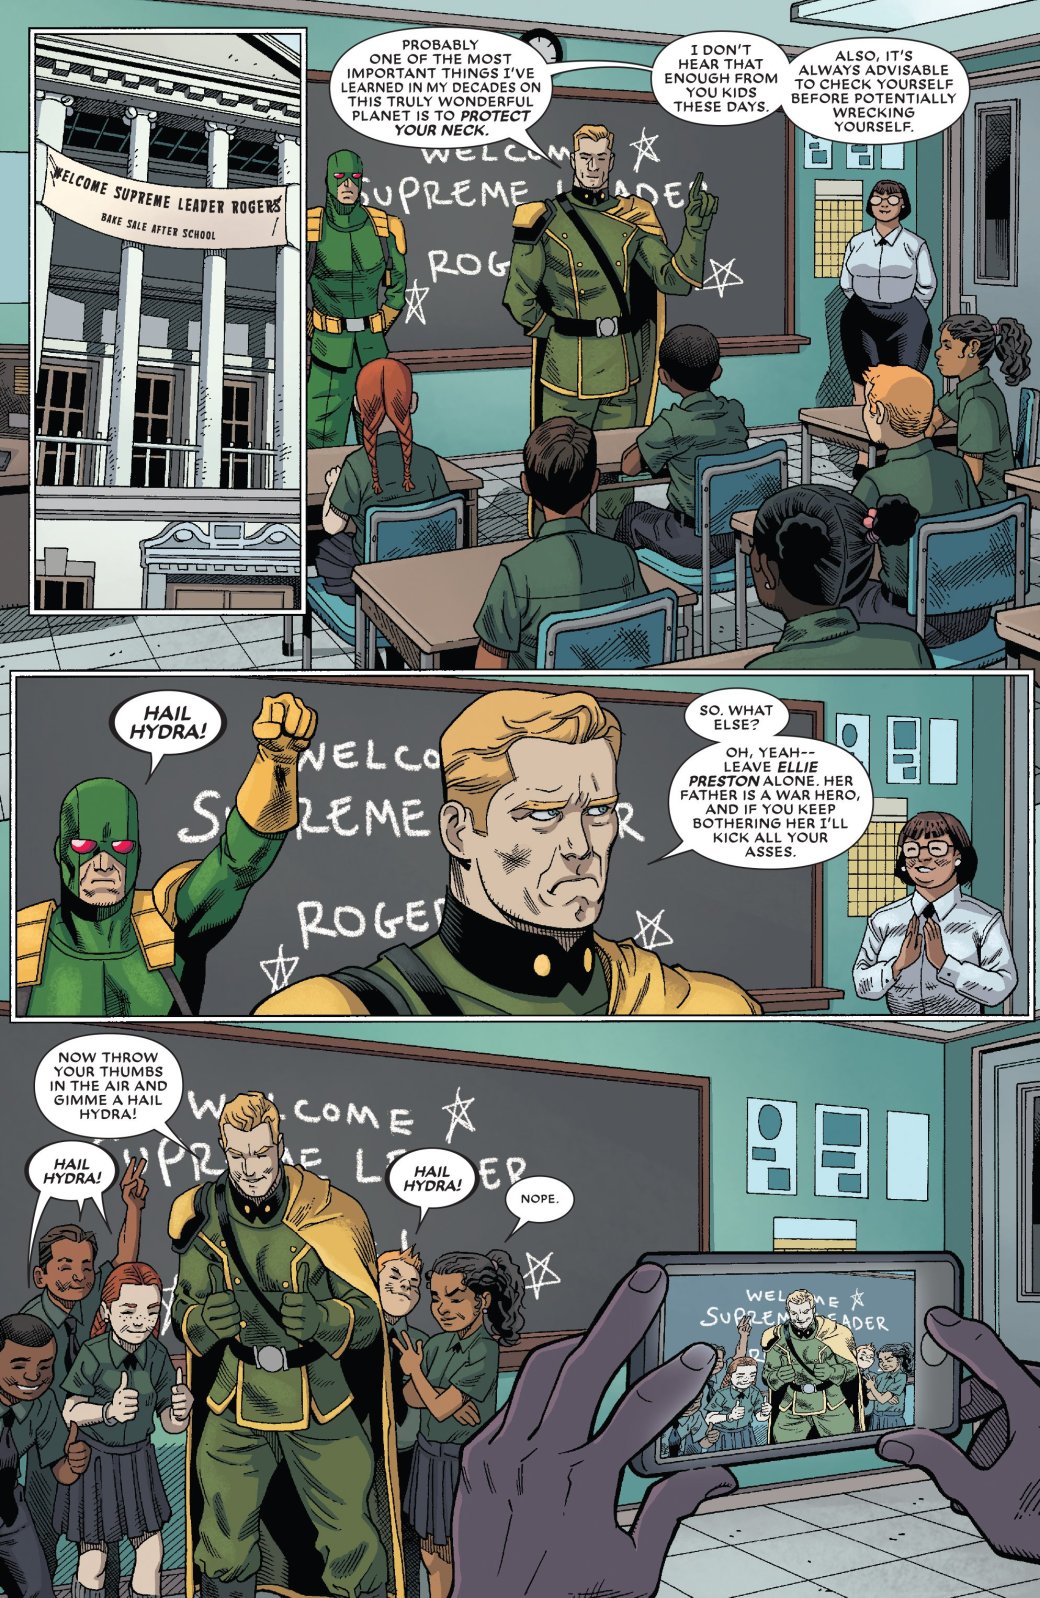 Комикс про Дэдпула подтверждает — теперь у Marvel два Капитана Америка. - Изображение 1